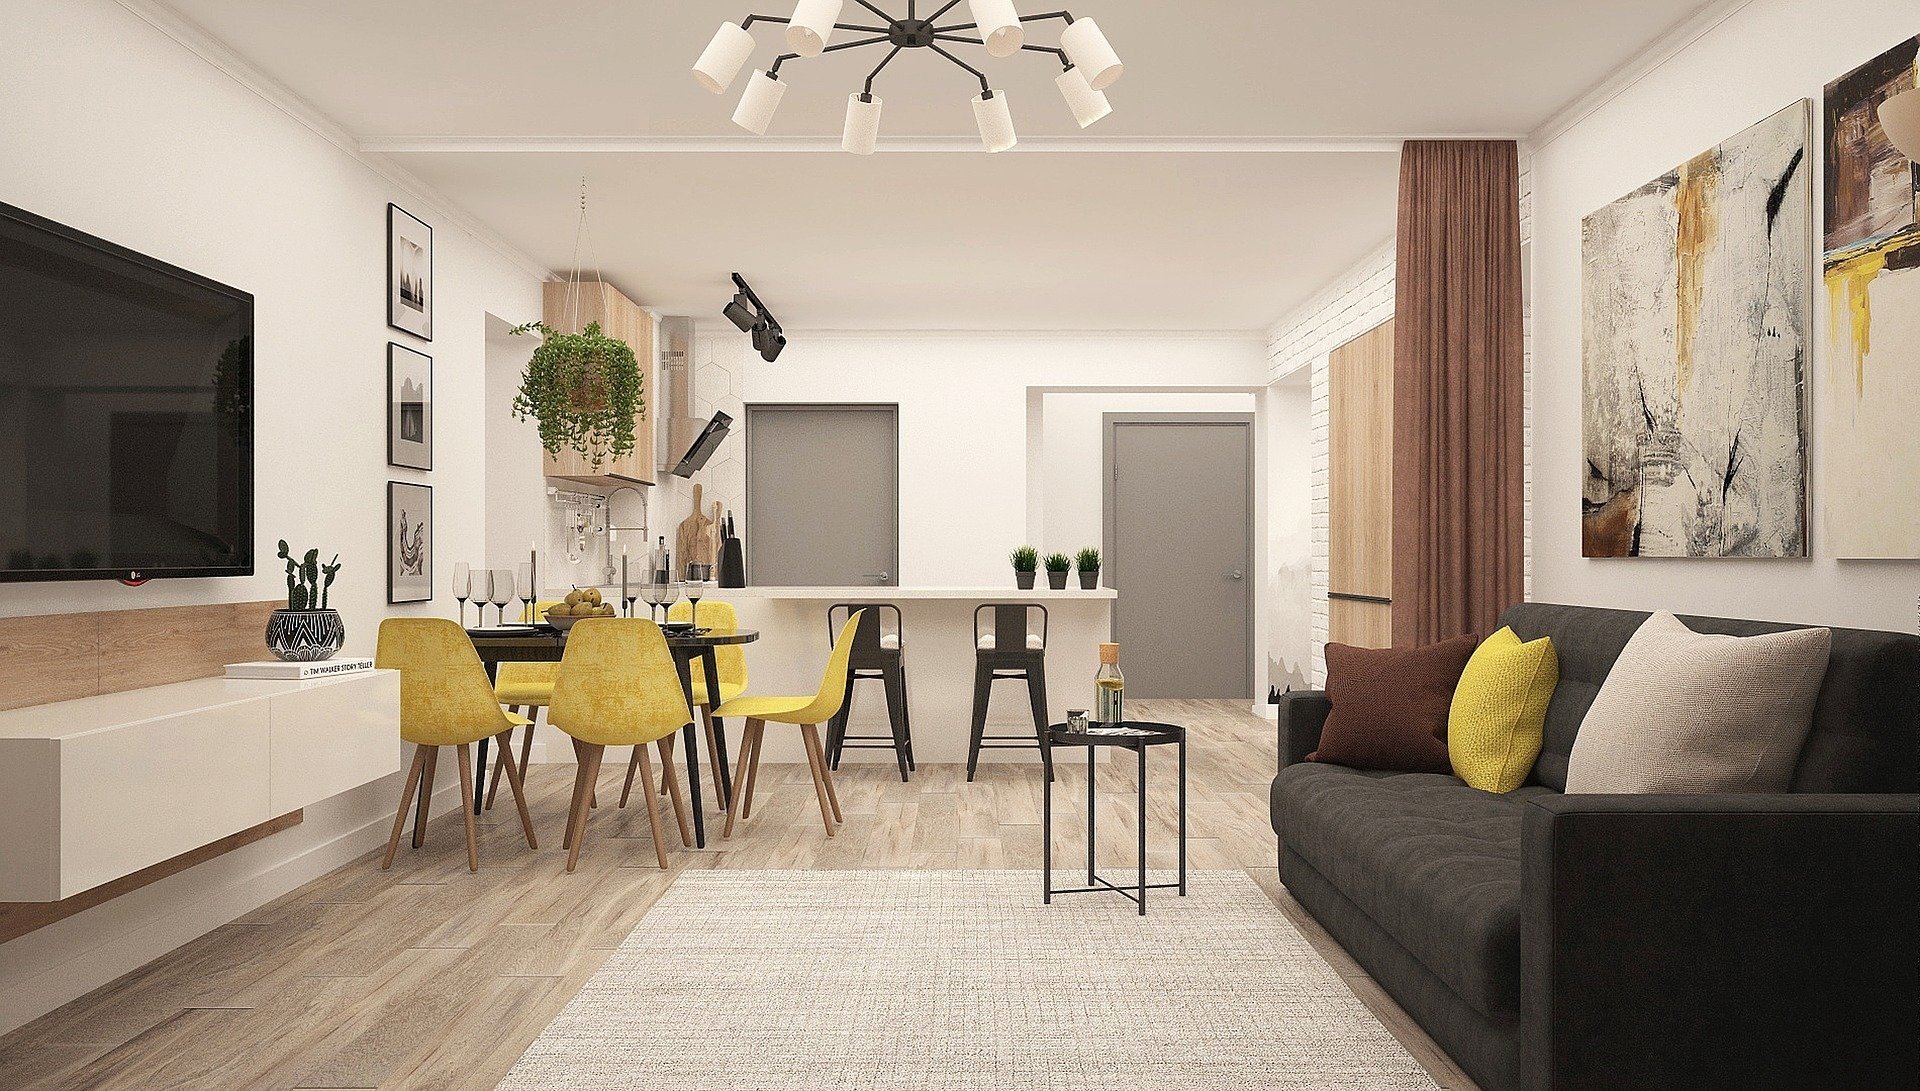 Как выбрать мебель для квартиры